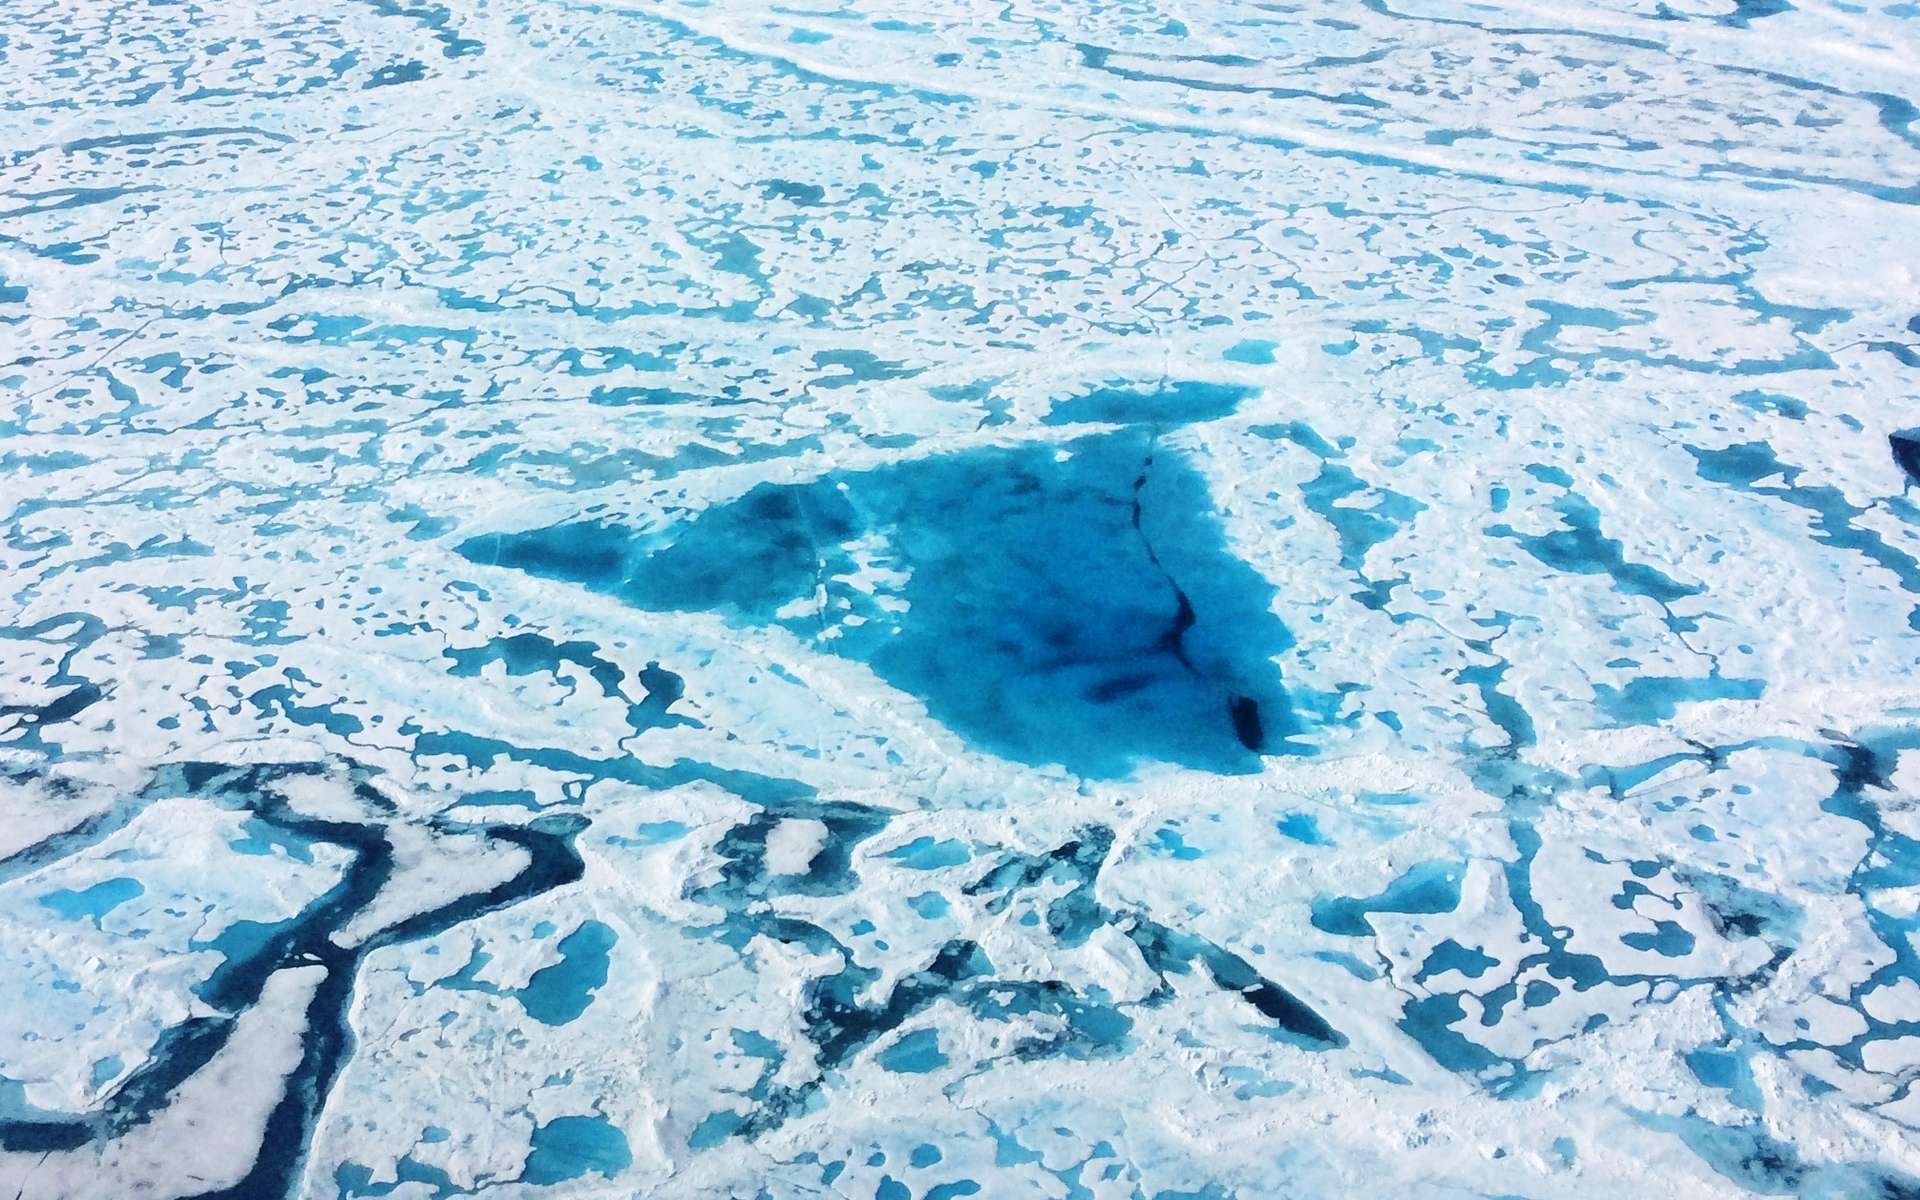 Réchauffement climatique : fonte record de la banquise arctique en 2016 (MAJ)